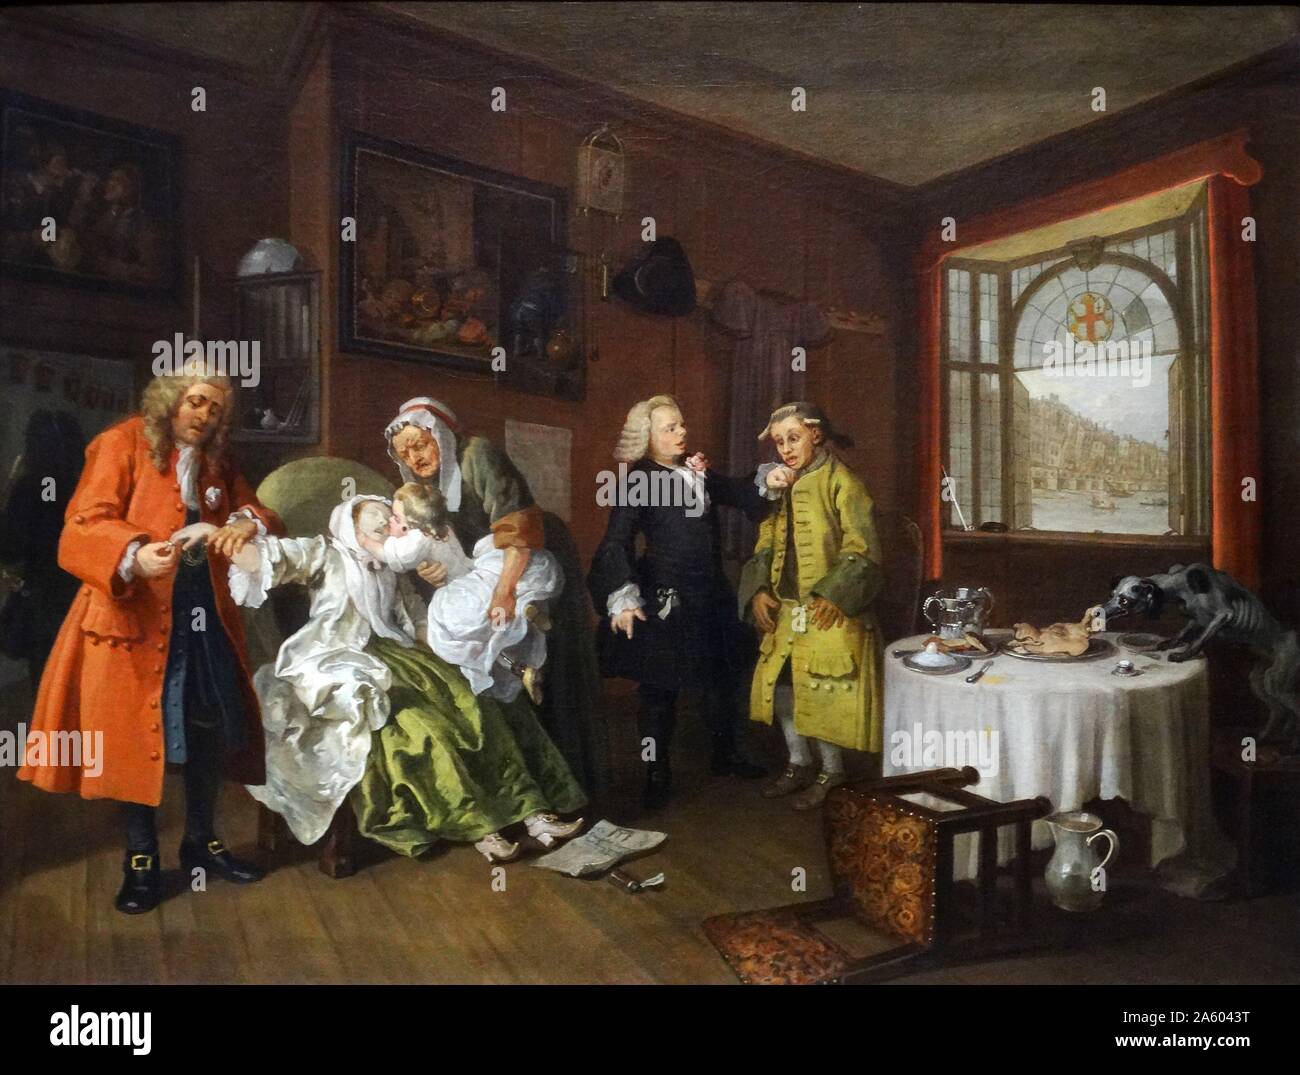 La peinture intitulée 'Mariage à-la-mode : 6. La Dame de la mort" par William Hogarth (1697-1764) un peintre, graveur, illustration satirique, critique sociale, et caricaturiste. En date du 18e siècle Banque D'Images